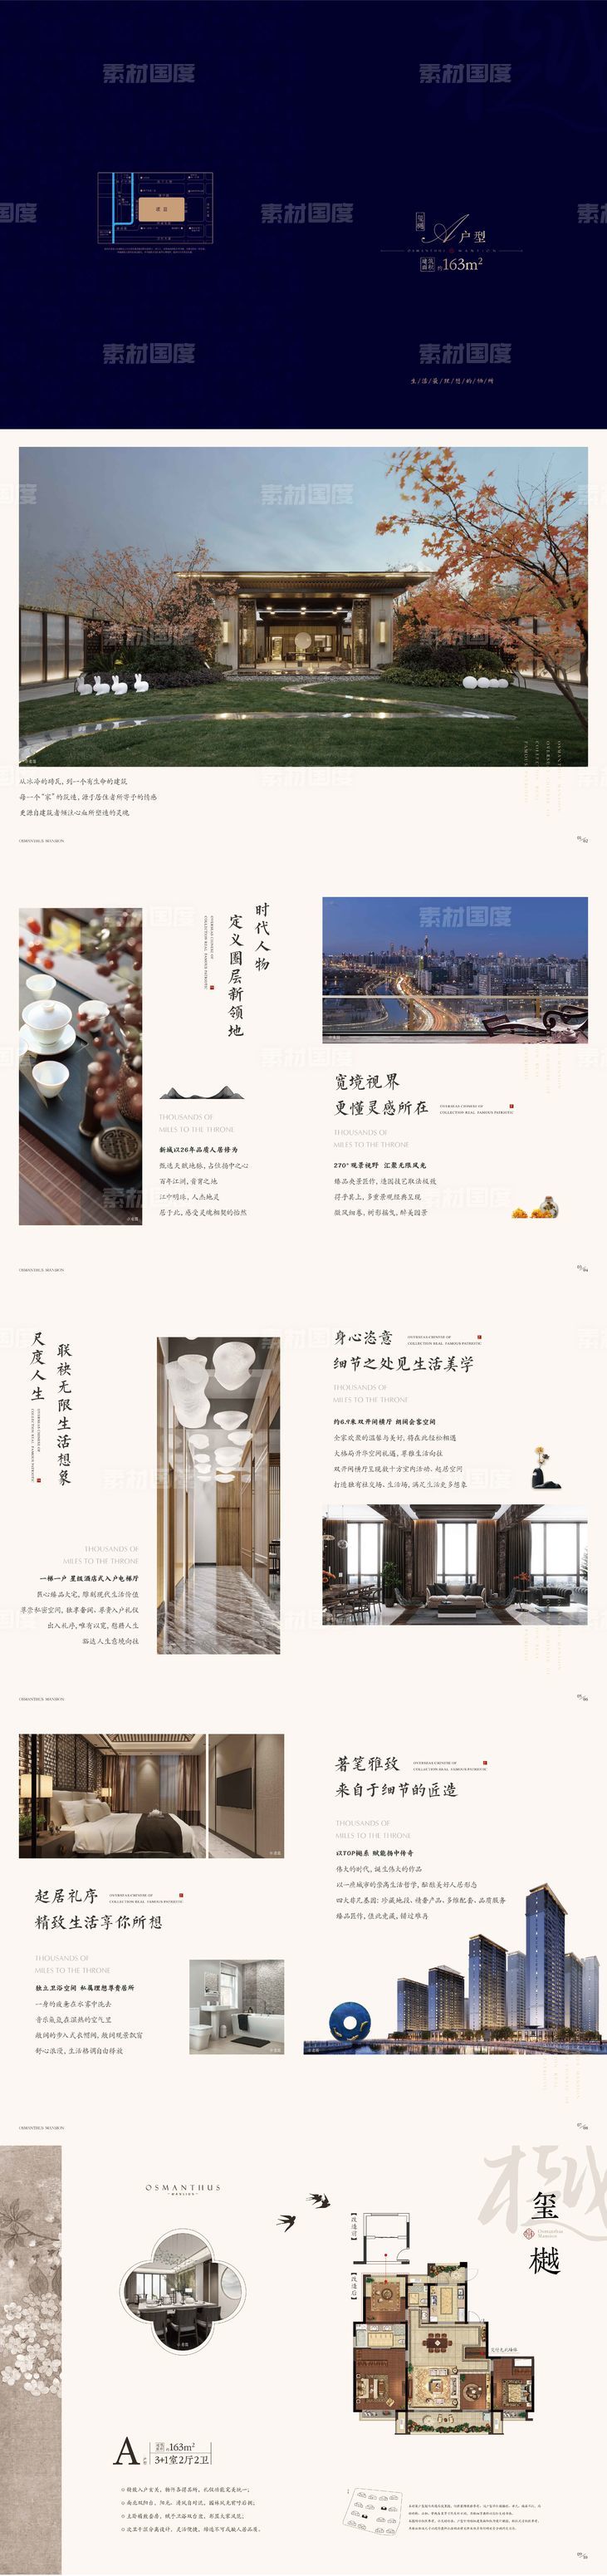 新中式别墅户型折页